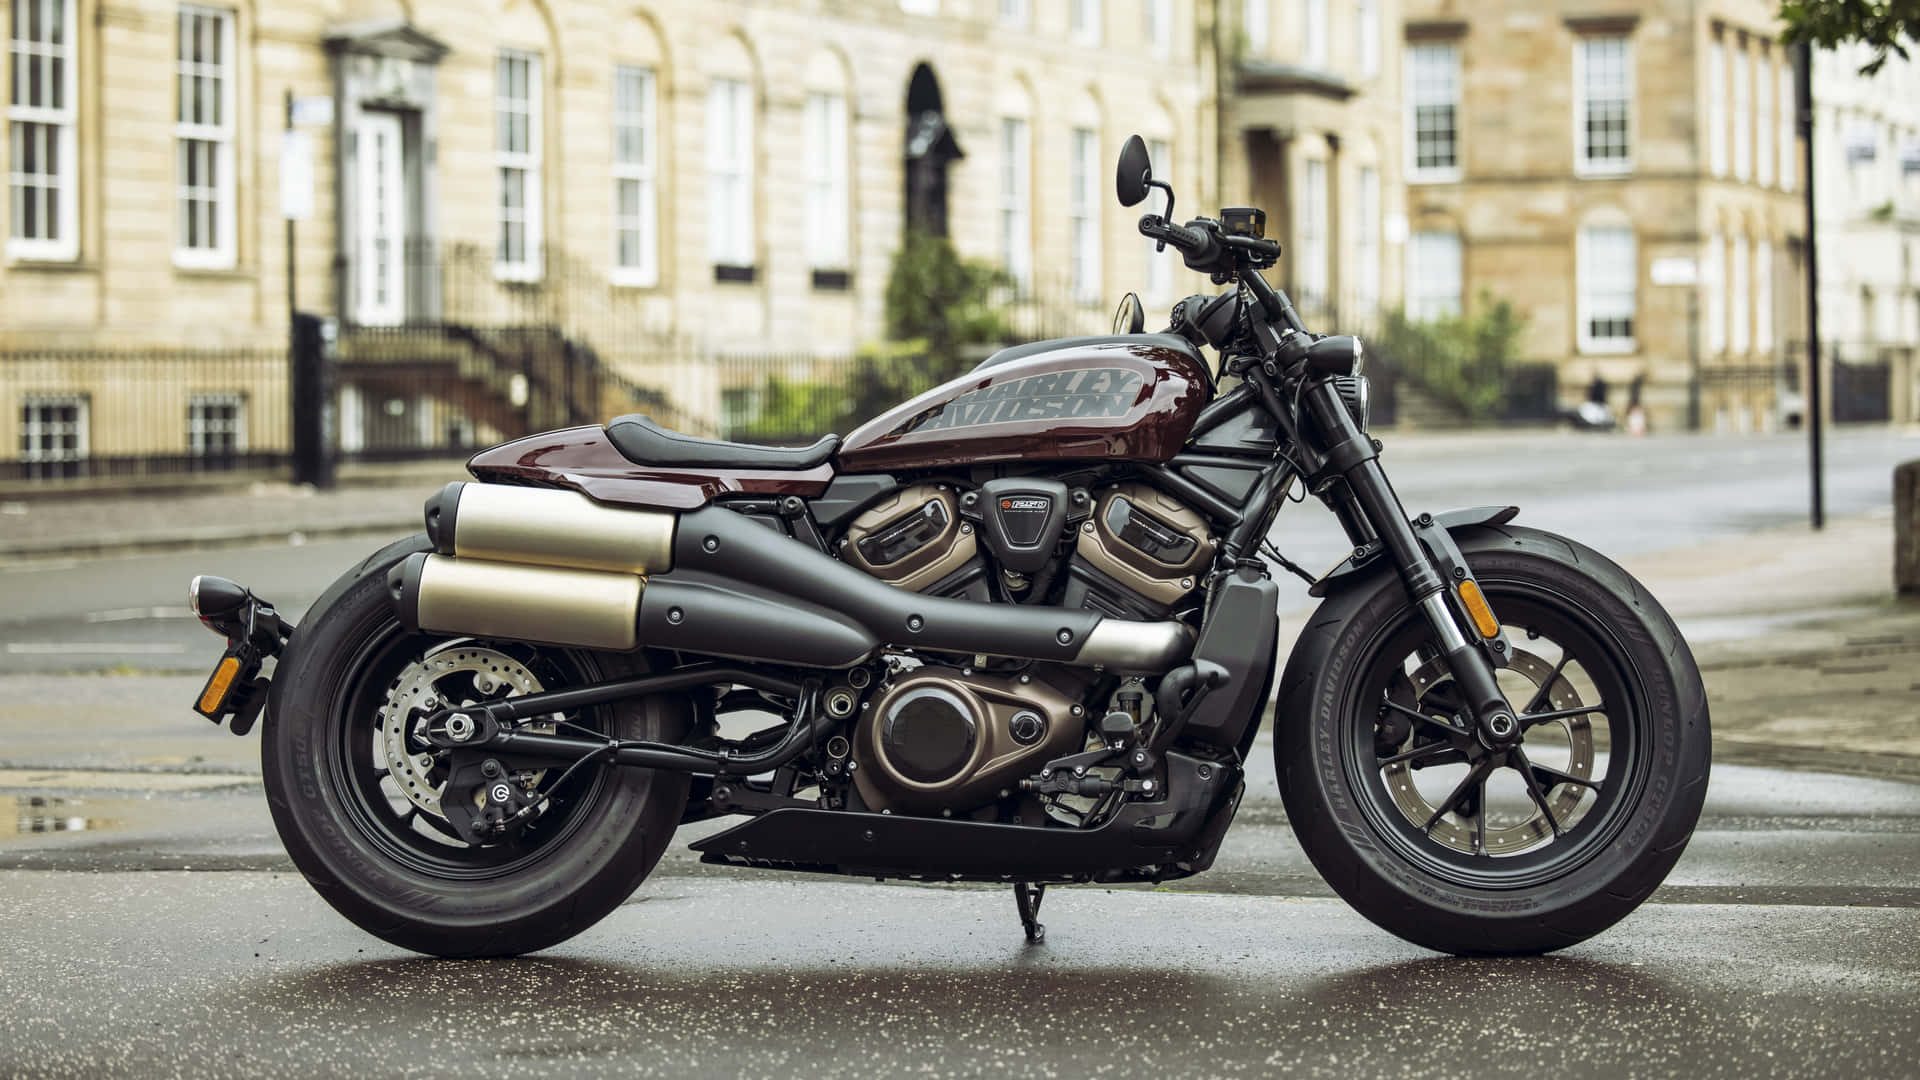 Hintergrundbildeines Harley Davidson Forty Eight Motorrads